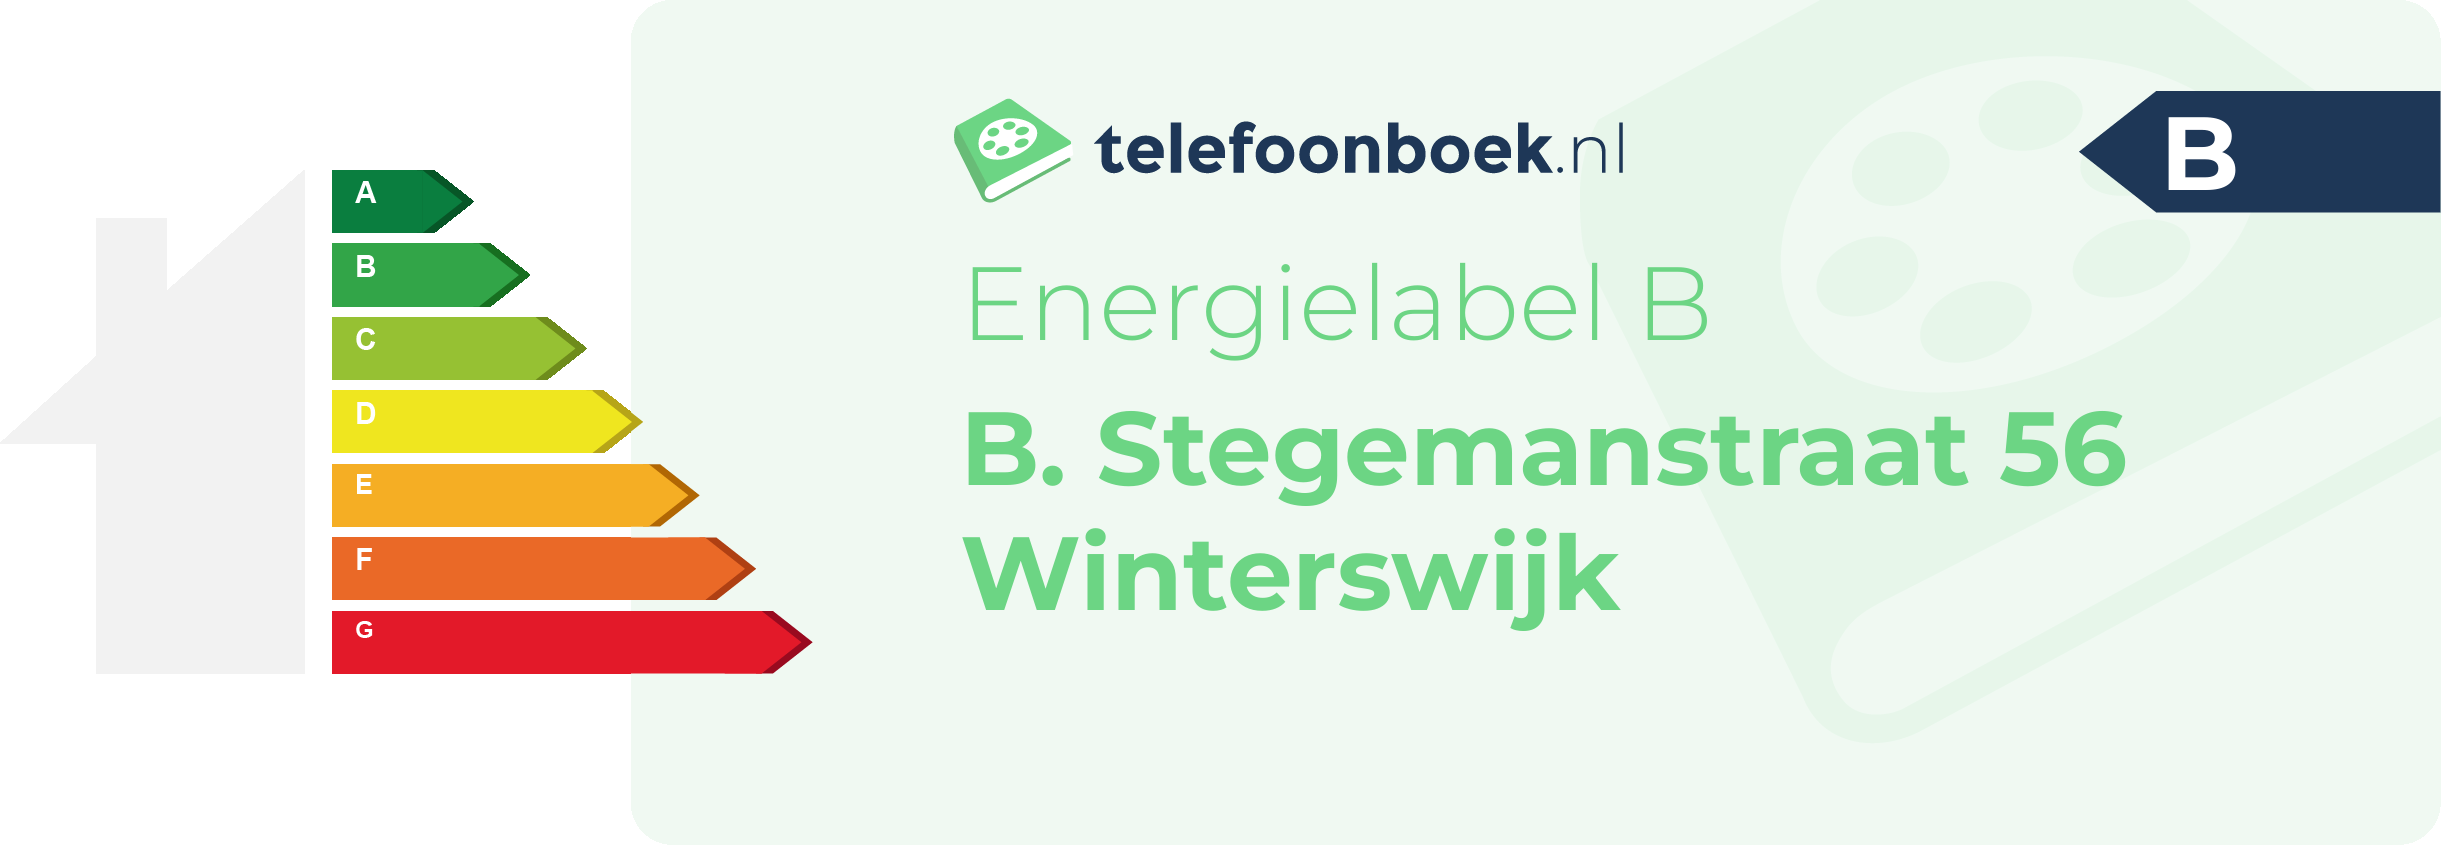 Energielabel B. Stegemanstraat 56 Winterswijk